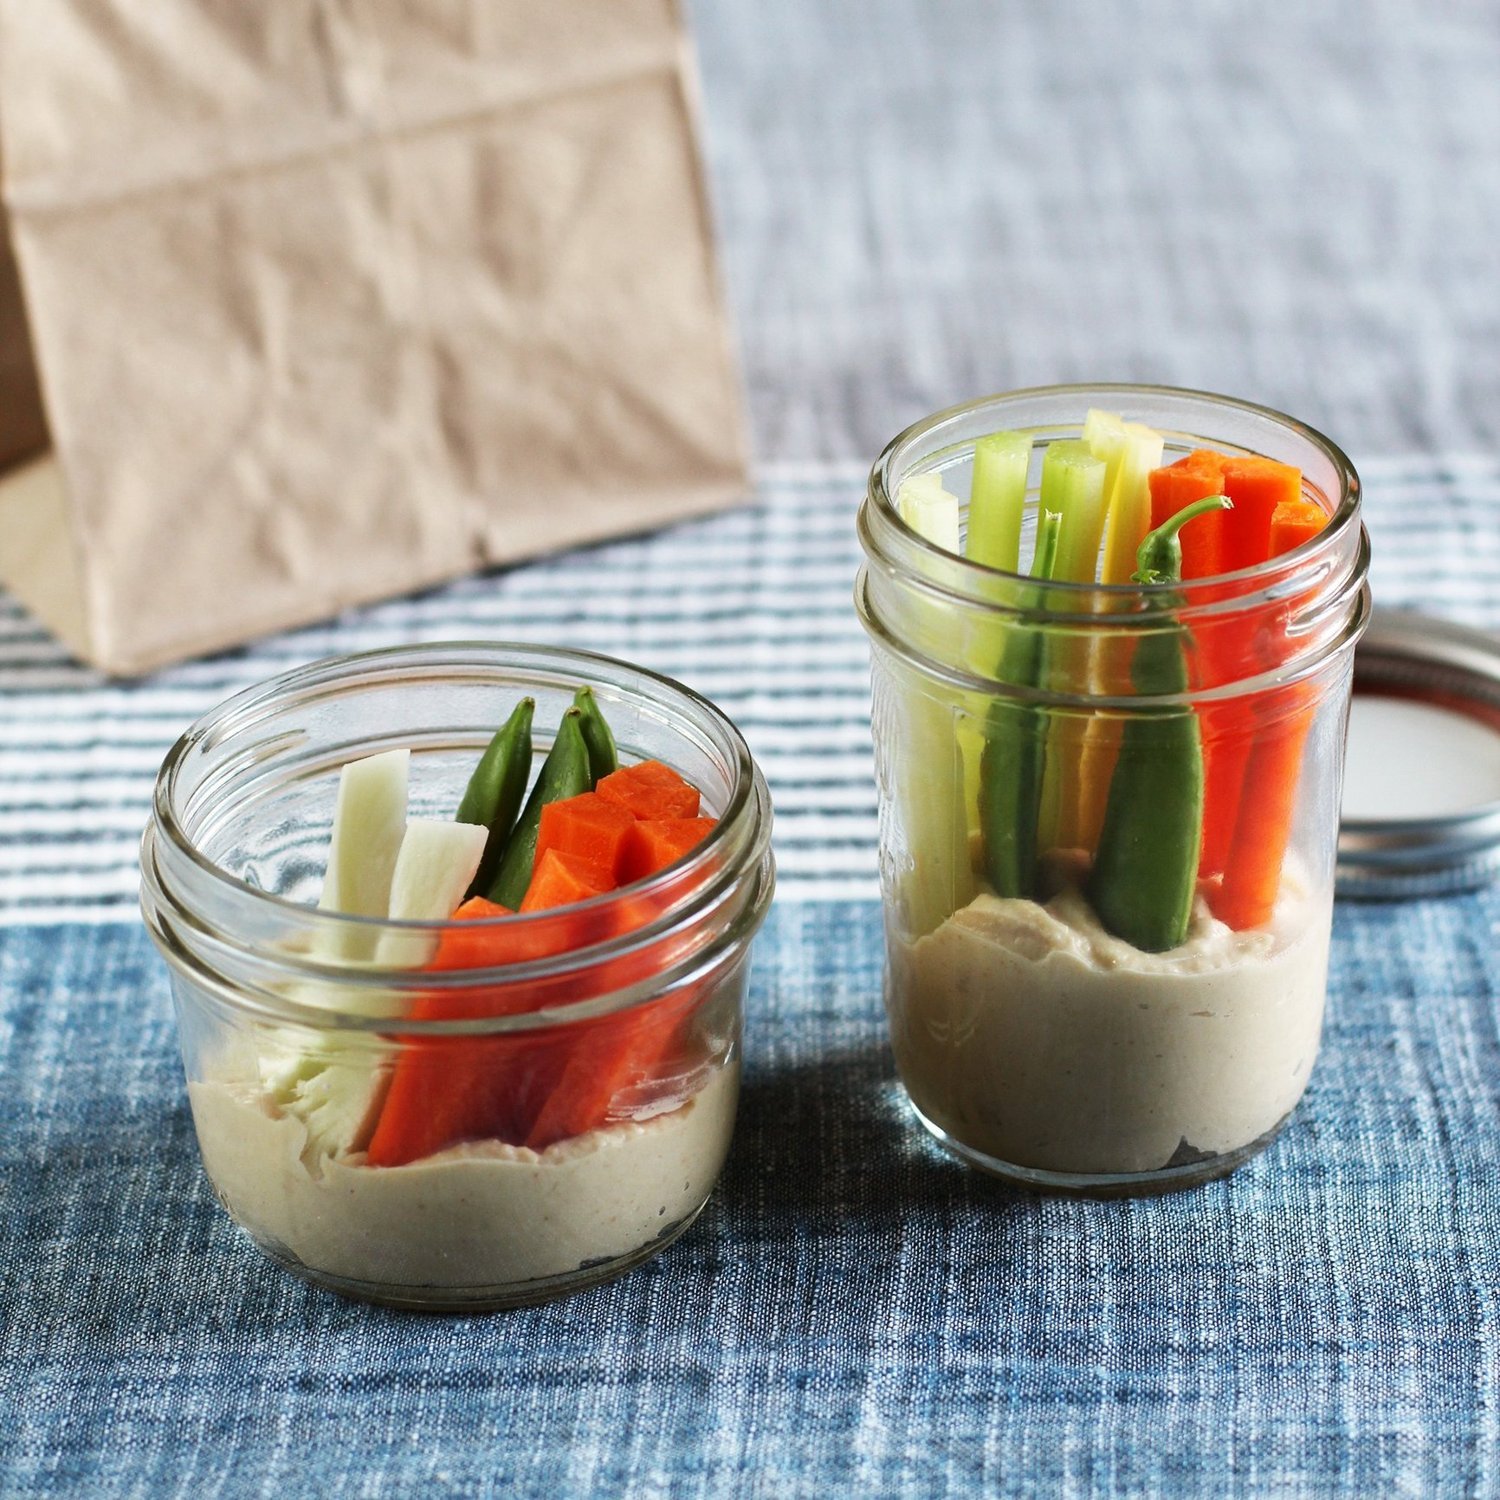 veggies and dip in a jar